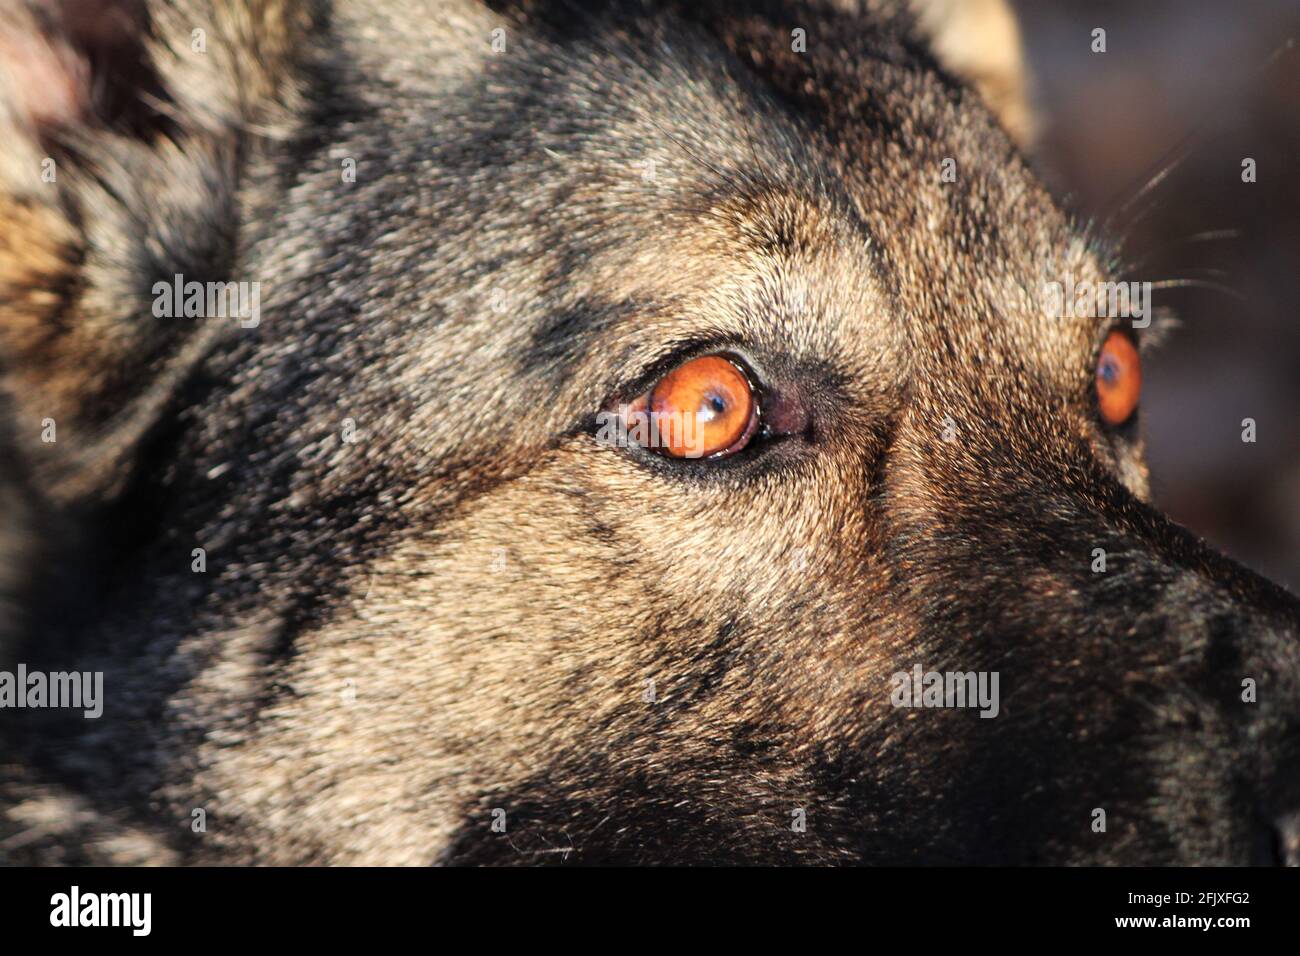 Selective focus on the eyes of a German shepherd dog, macro eye shot Stock Photo